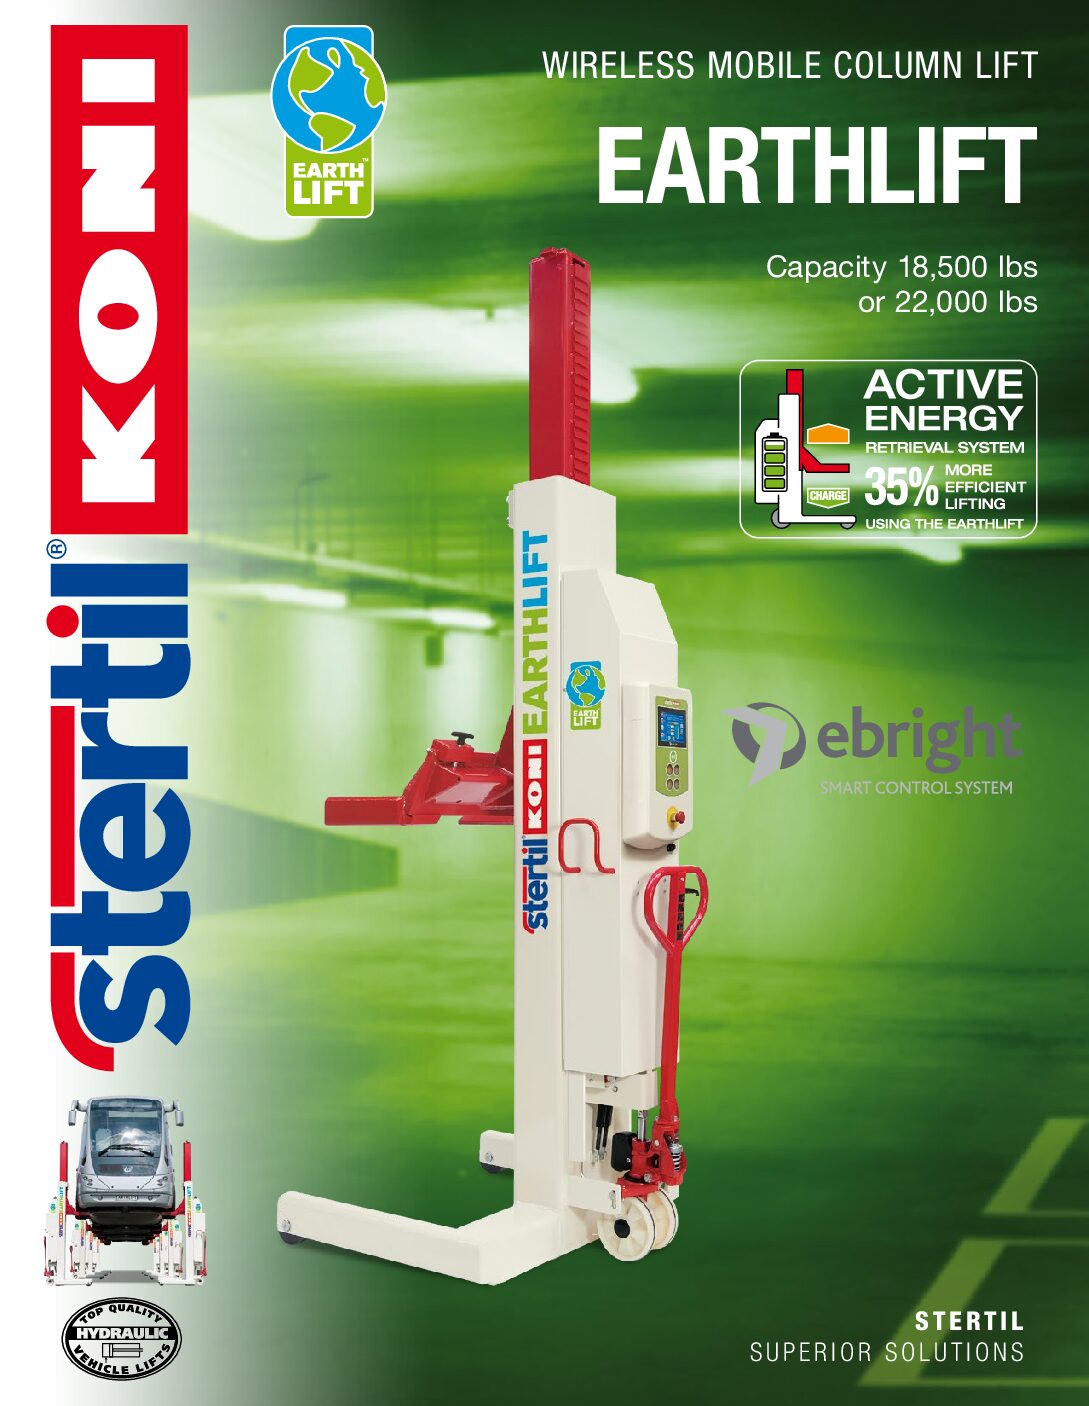 Stertil-Koni: EARTHLIFT – US Version